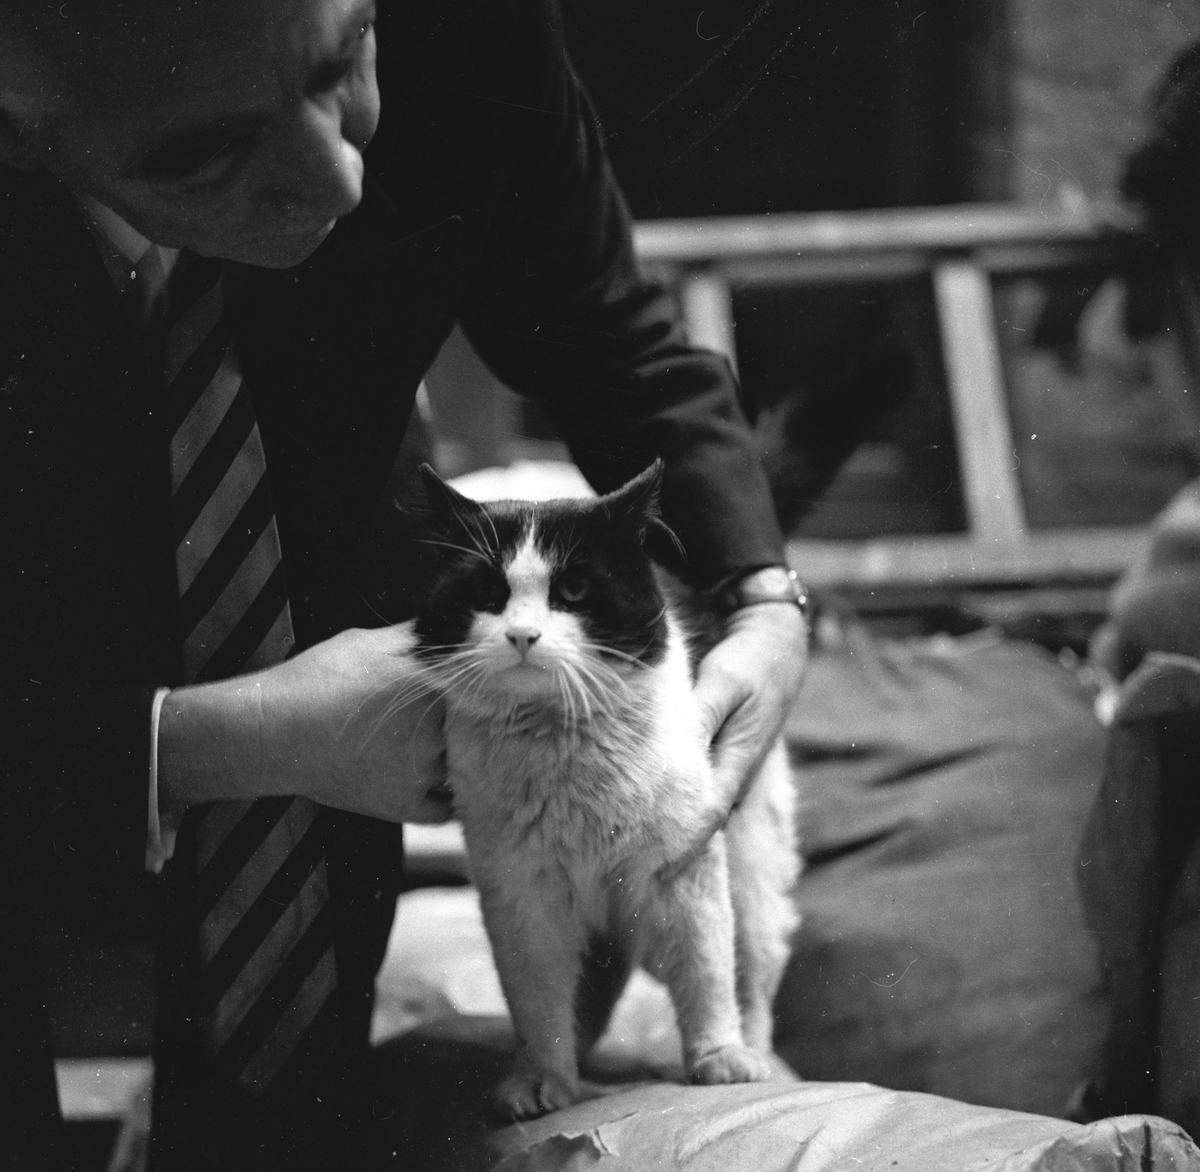 Fra katteutsilling.
Fotografert 1956